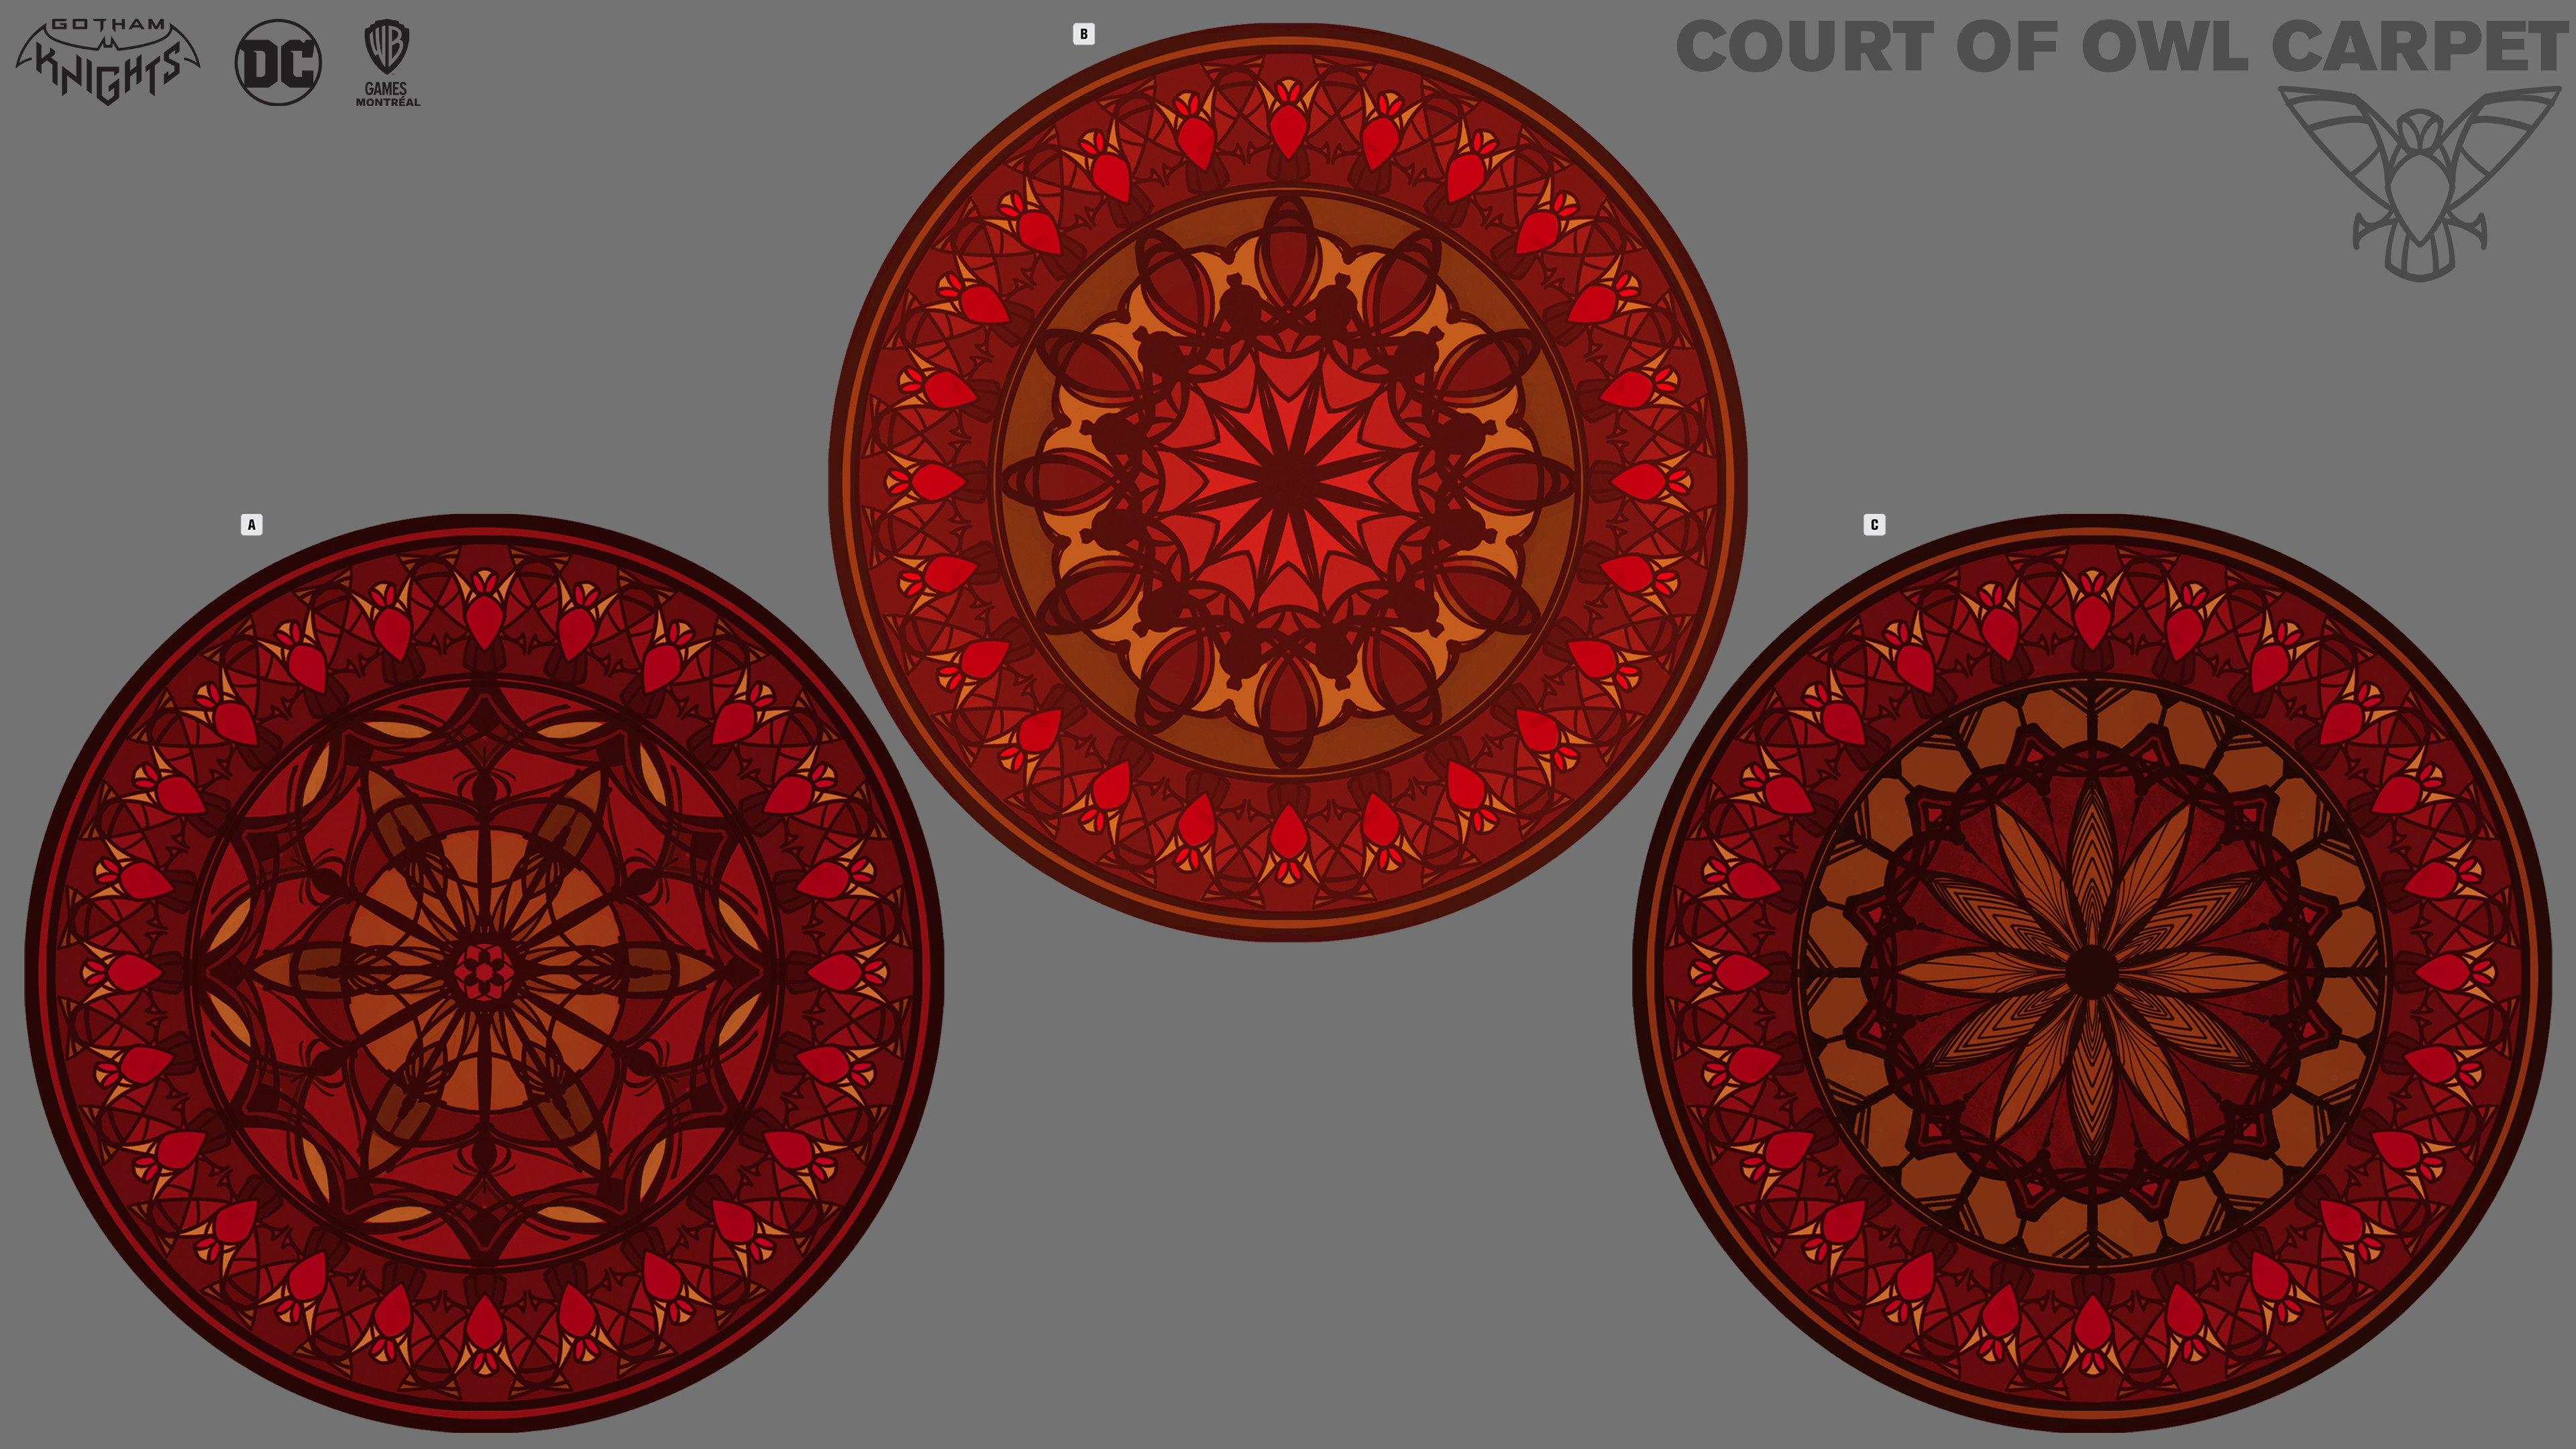 Court of Owl carpet design variation- color